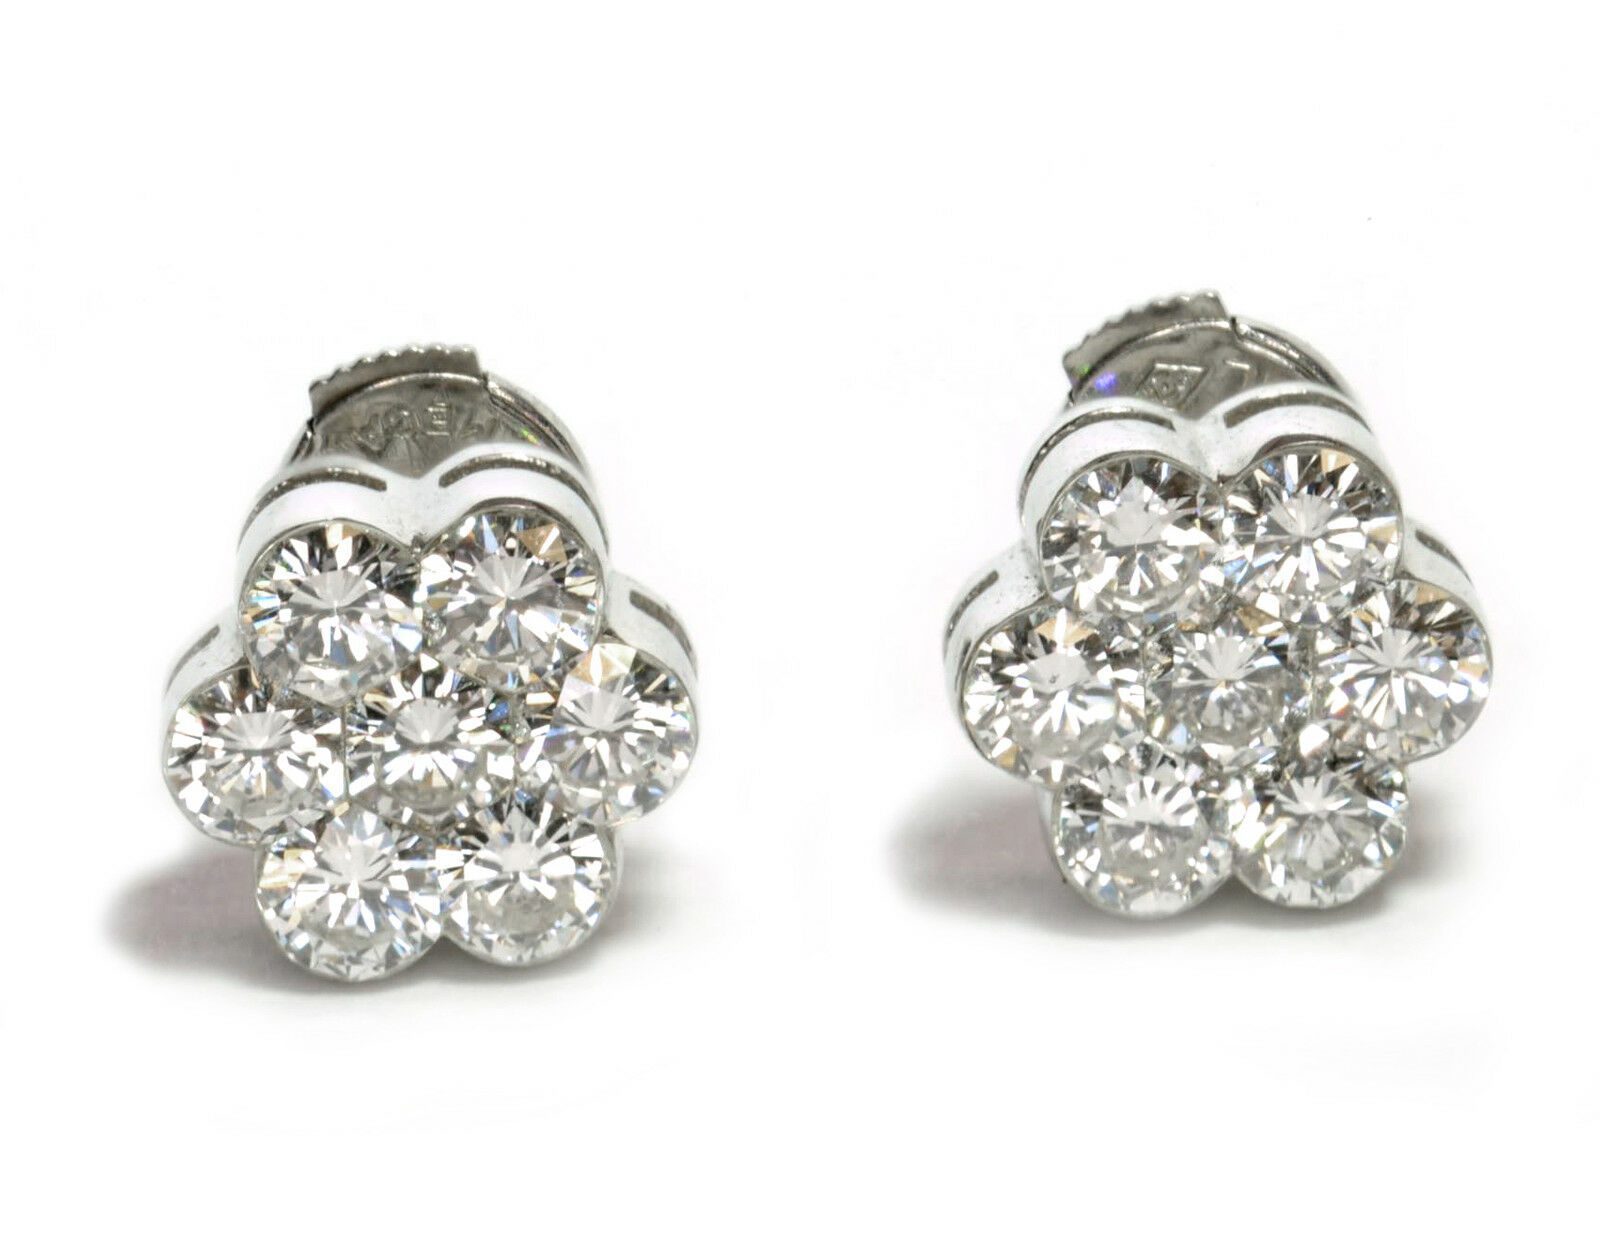 Flower-VVS-Diamond-Stud-Earrings-Invisible-Round-Setting-in-18k-White-Gold-20-131707237258